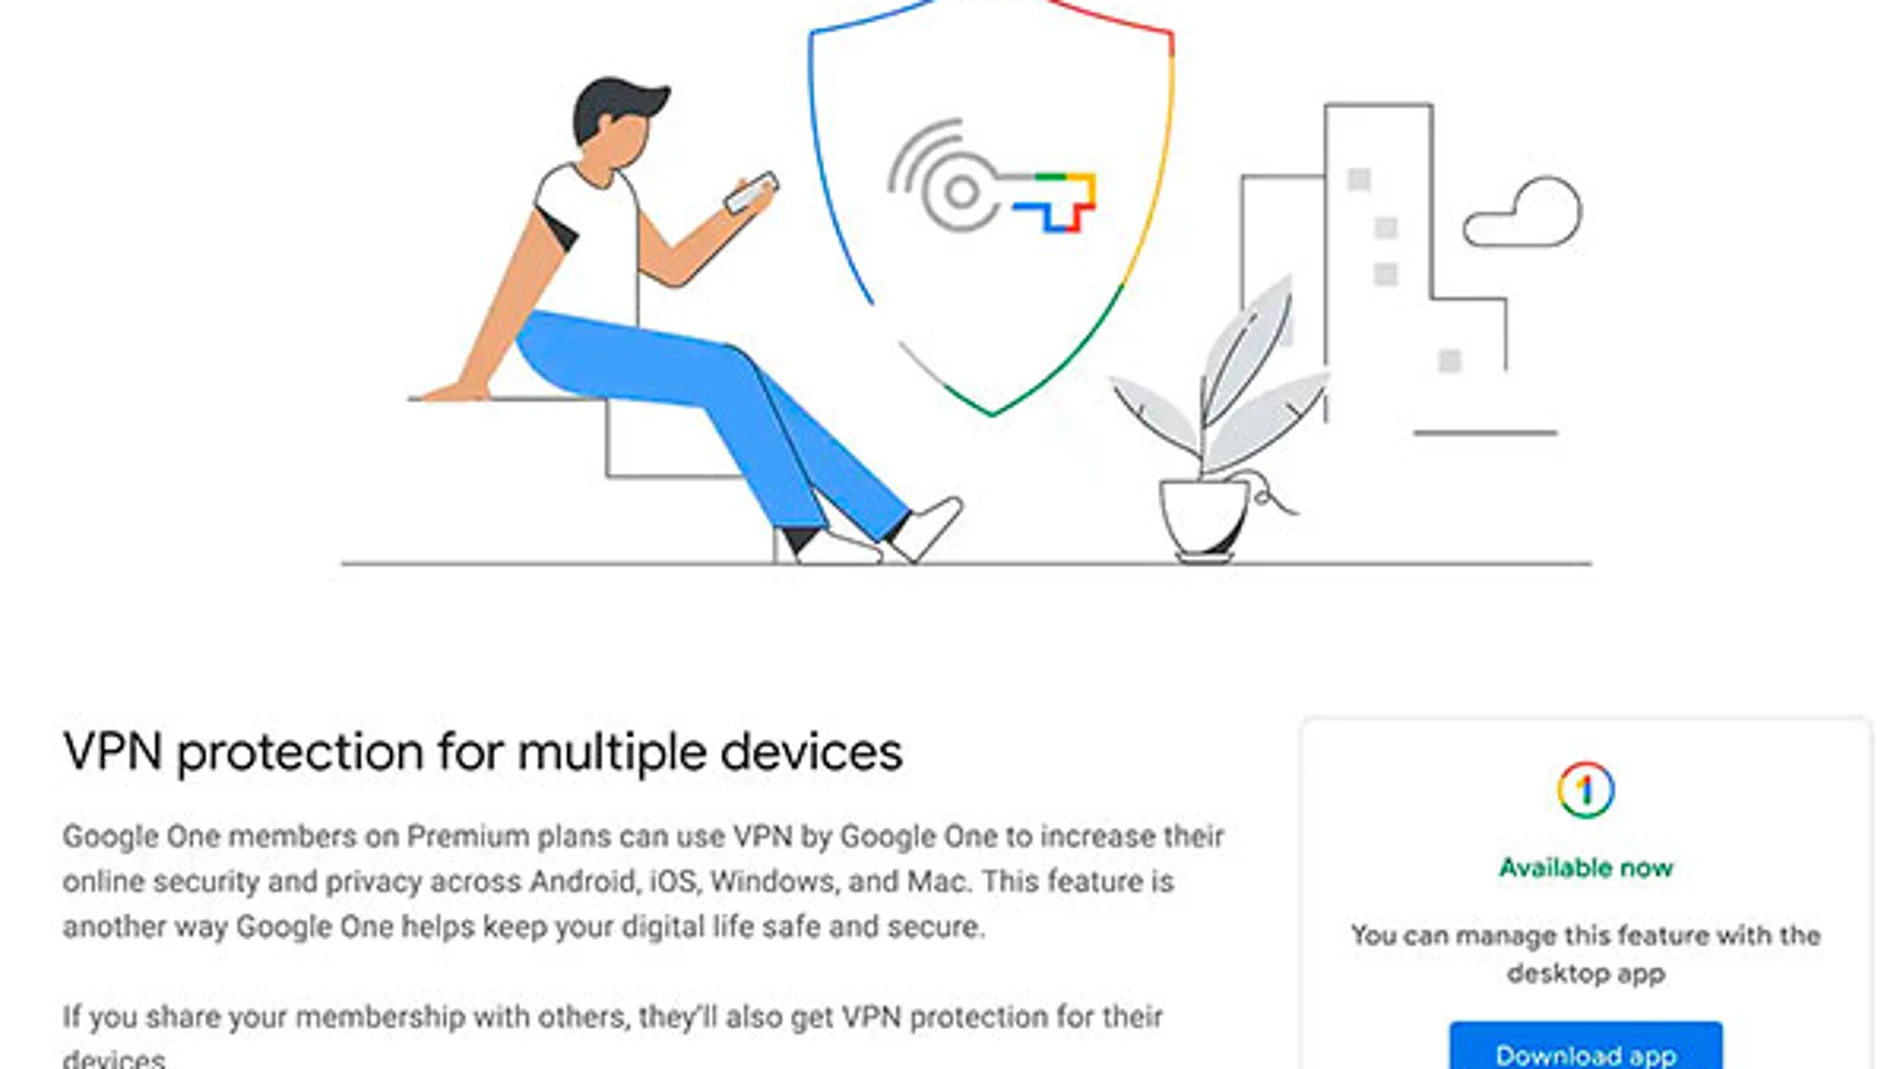 La VPN se encuentra disponible en la sección de Beneficios de Google One y requiere la descarga de una app en el ordenador para su uso.